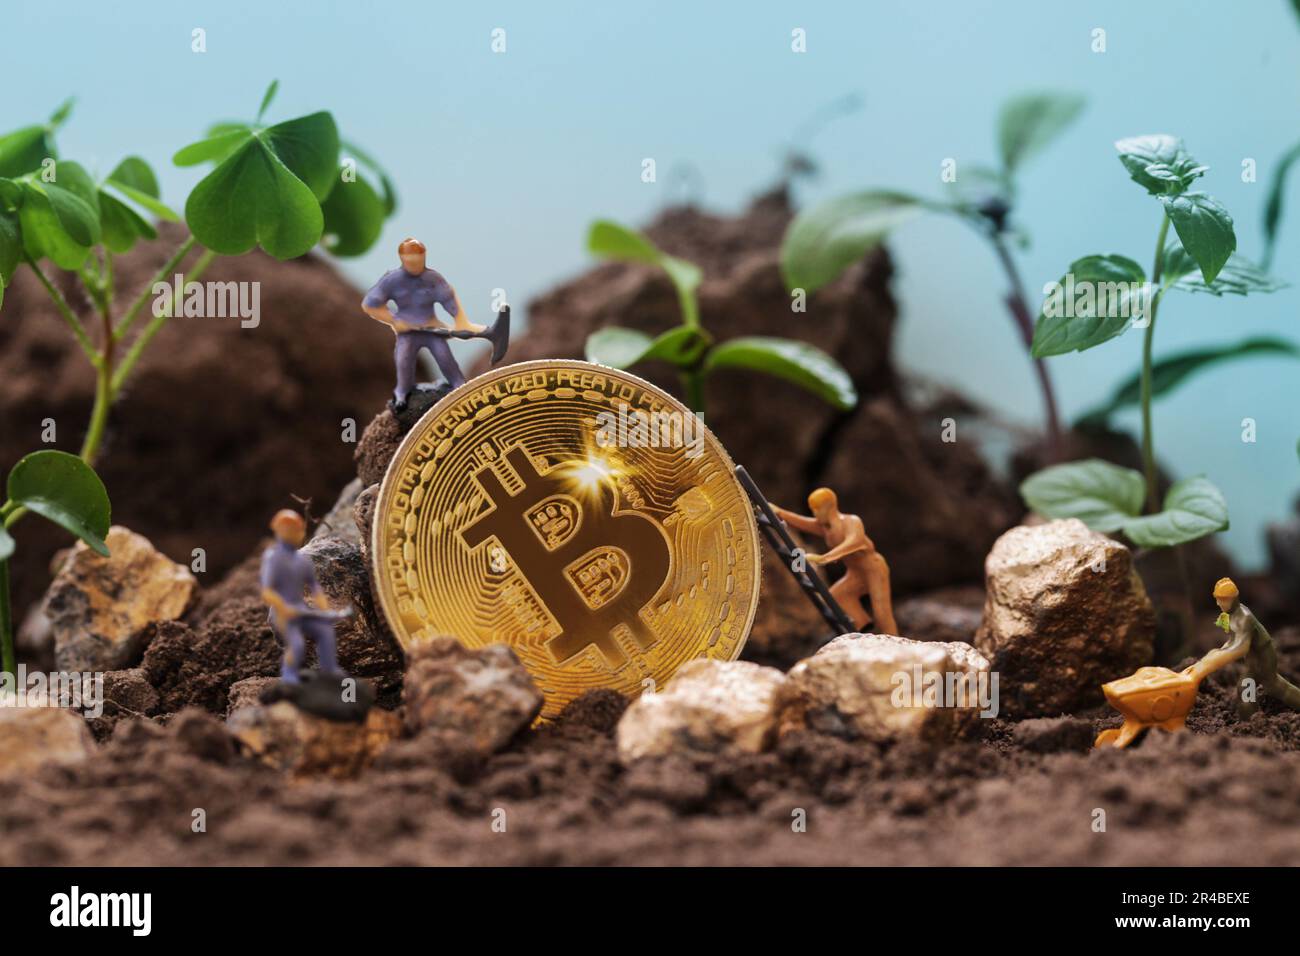 Développement durable Green crypto-monnaie Mining. Blockchain, figurines Miner creusant le sol pour découvrir le gros bitcoin d'or. Crypto-monnaies écologiques. Banque D'Images